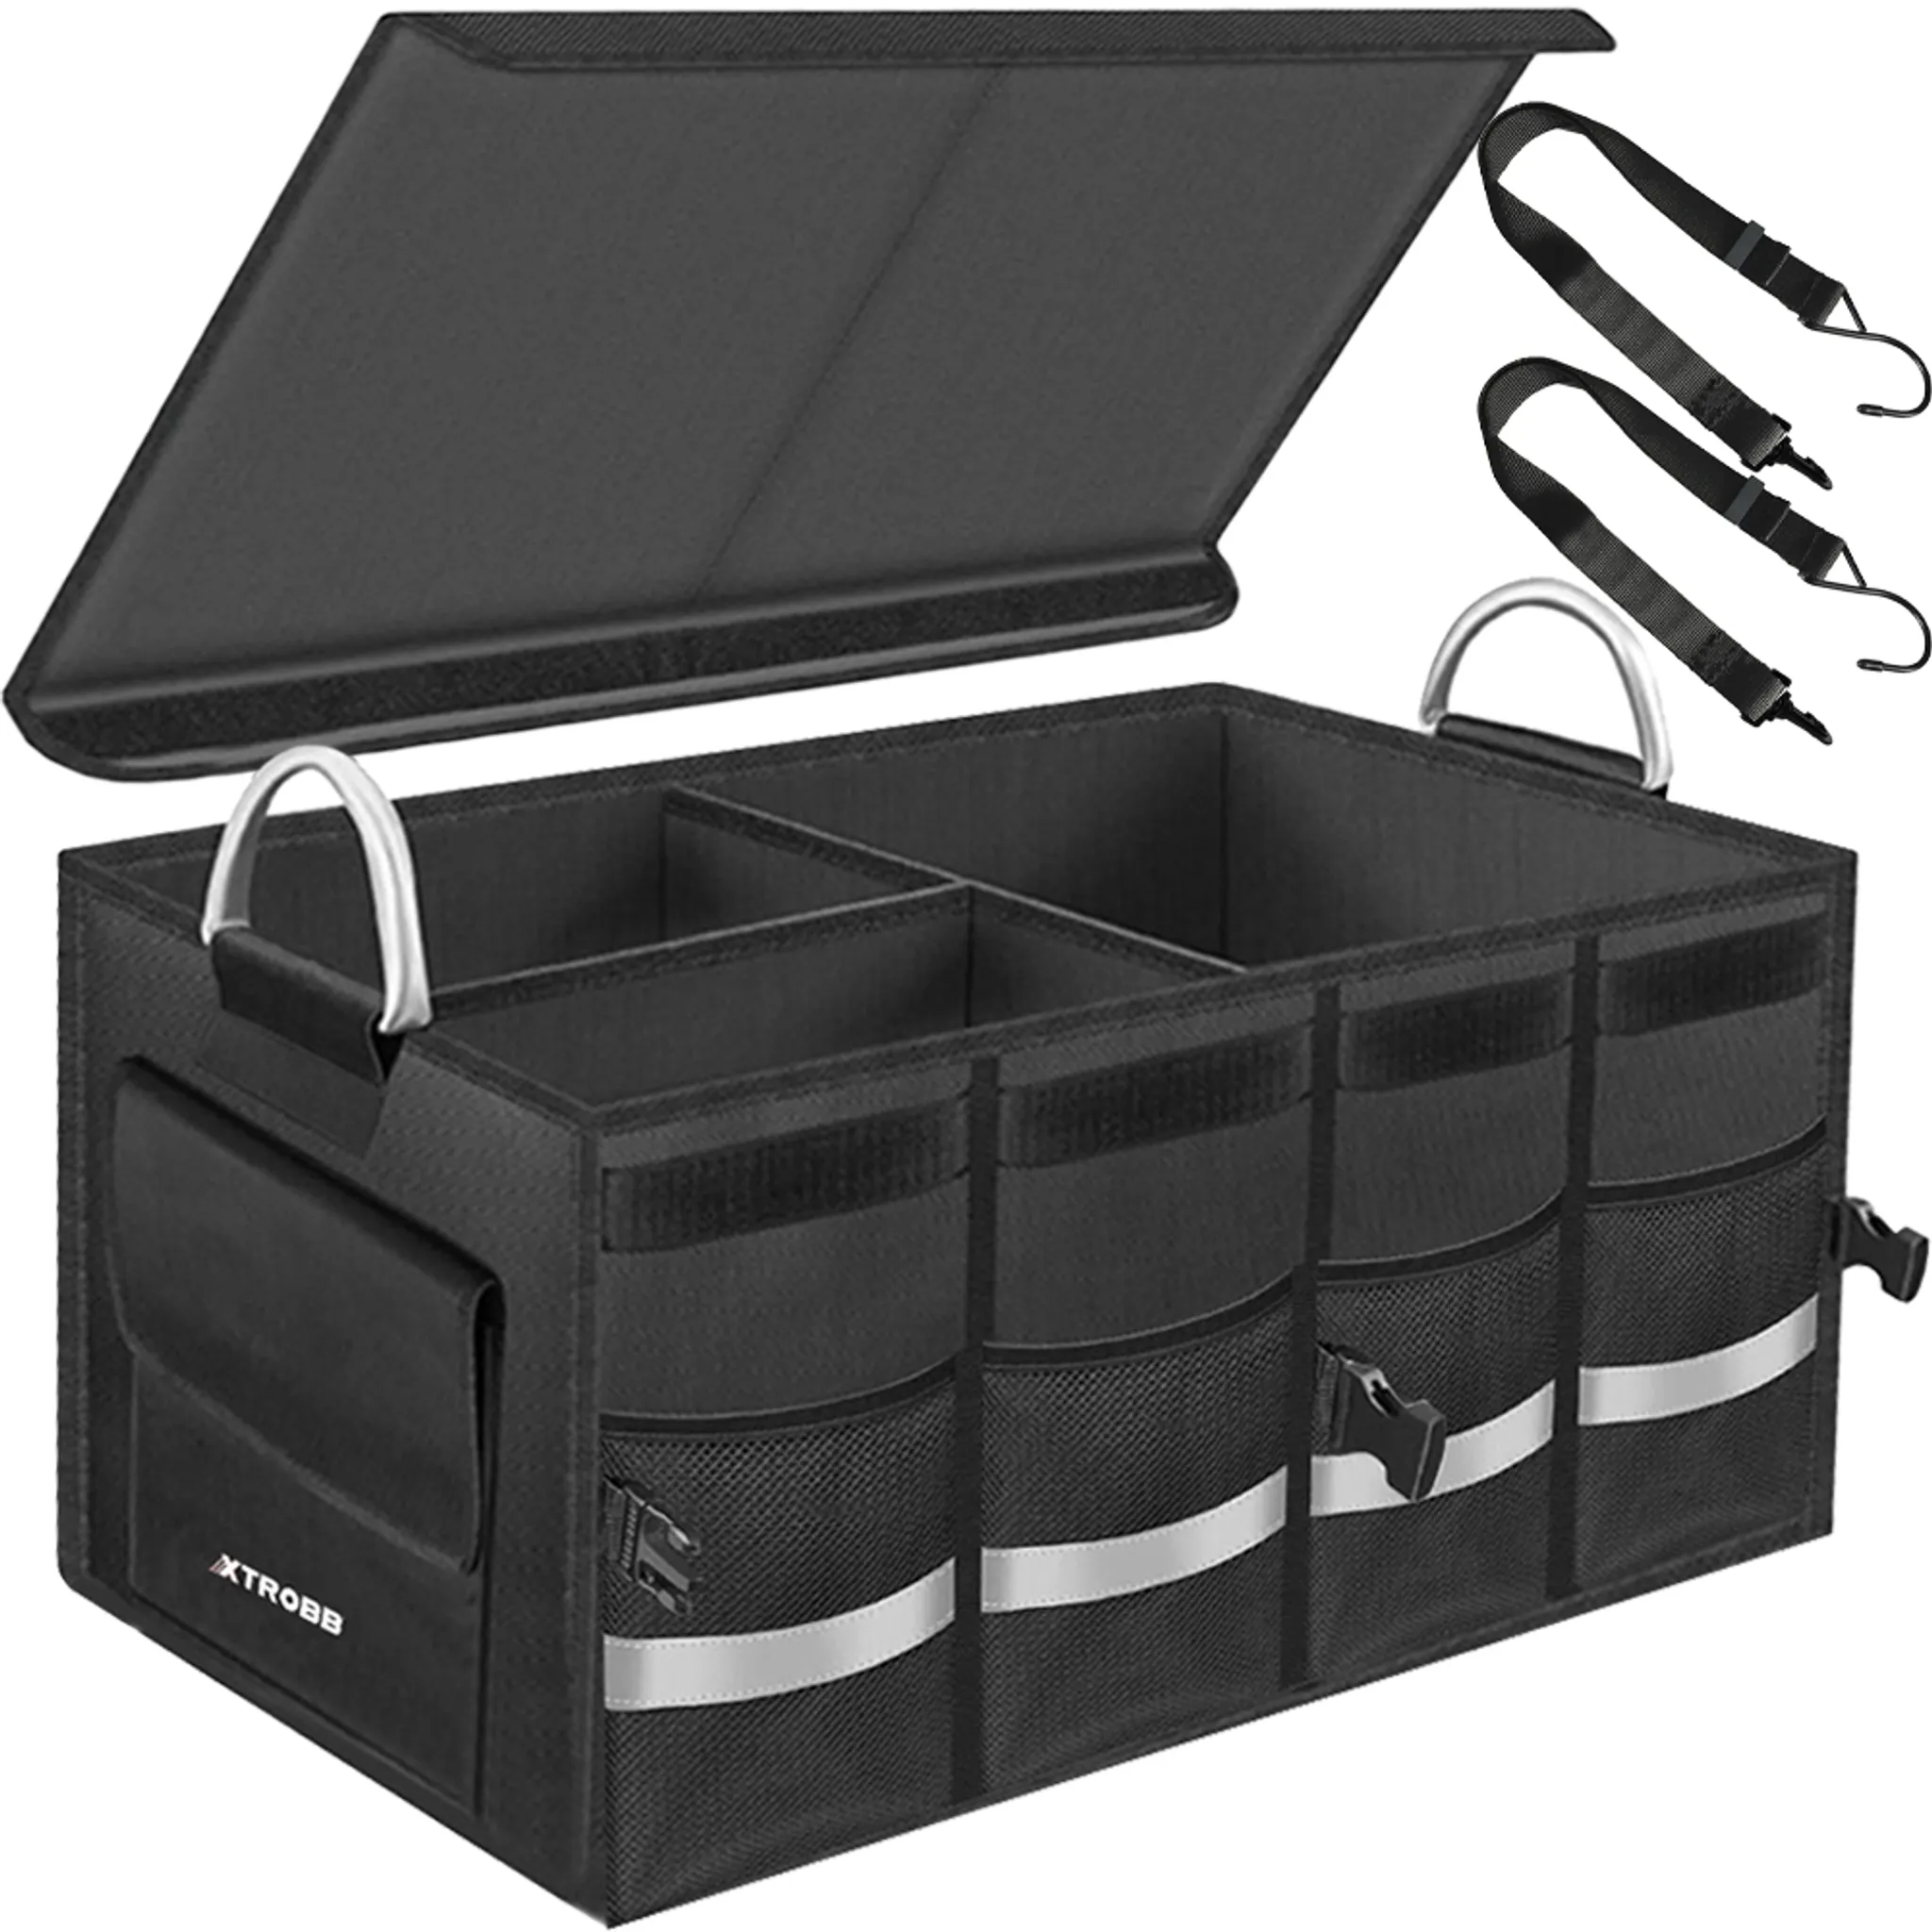 Auto Kofferraum Organizer Box Faltbare Aufbewahrung Ordentliche Tas